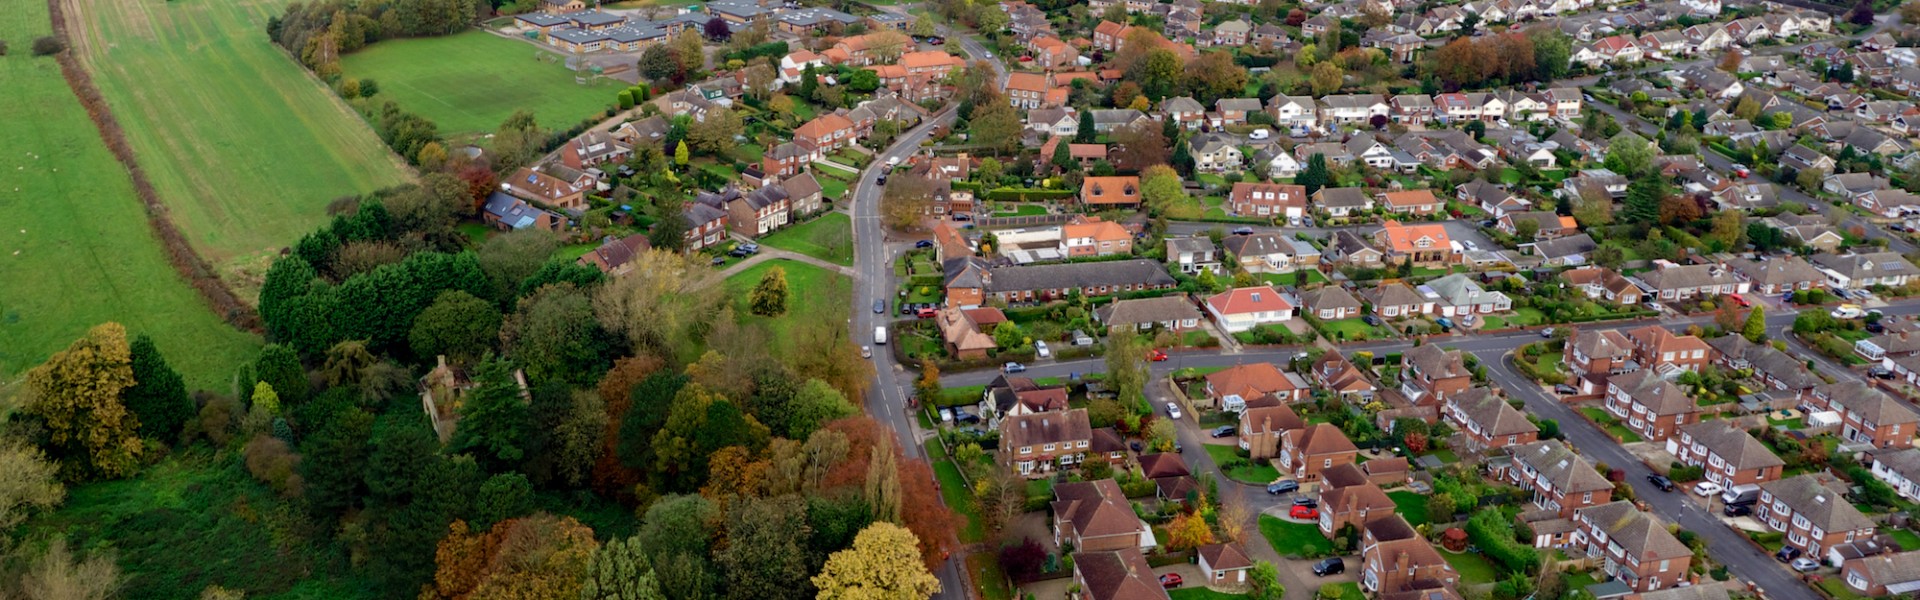 Poppleton Village aerial photo